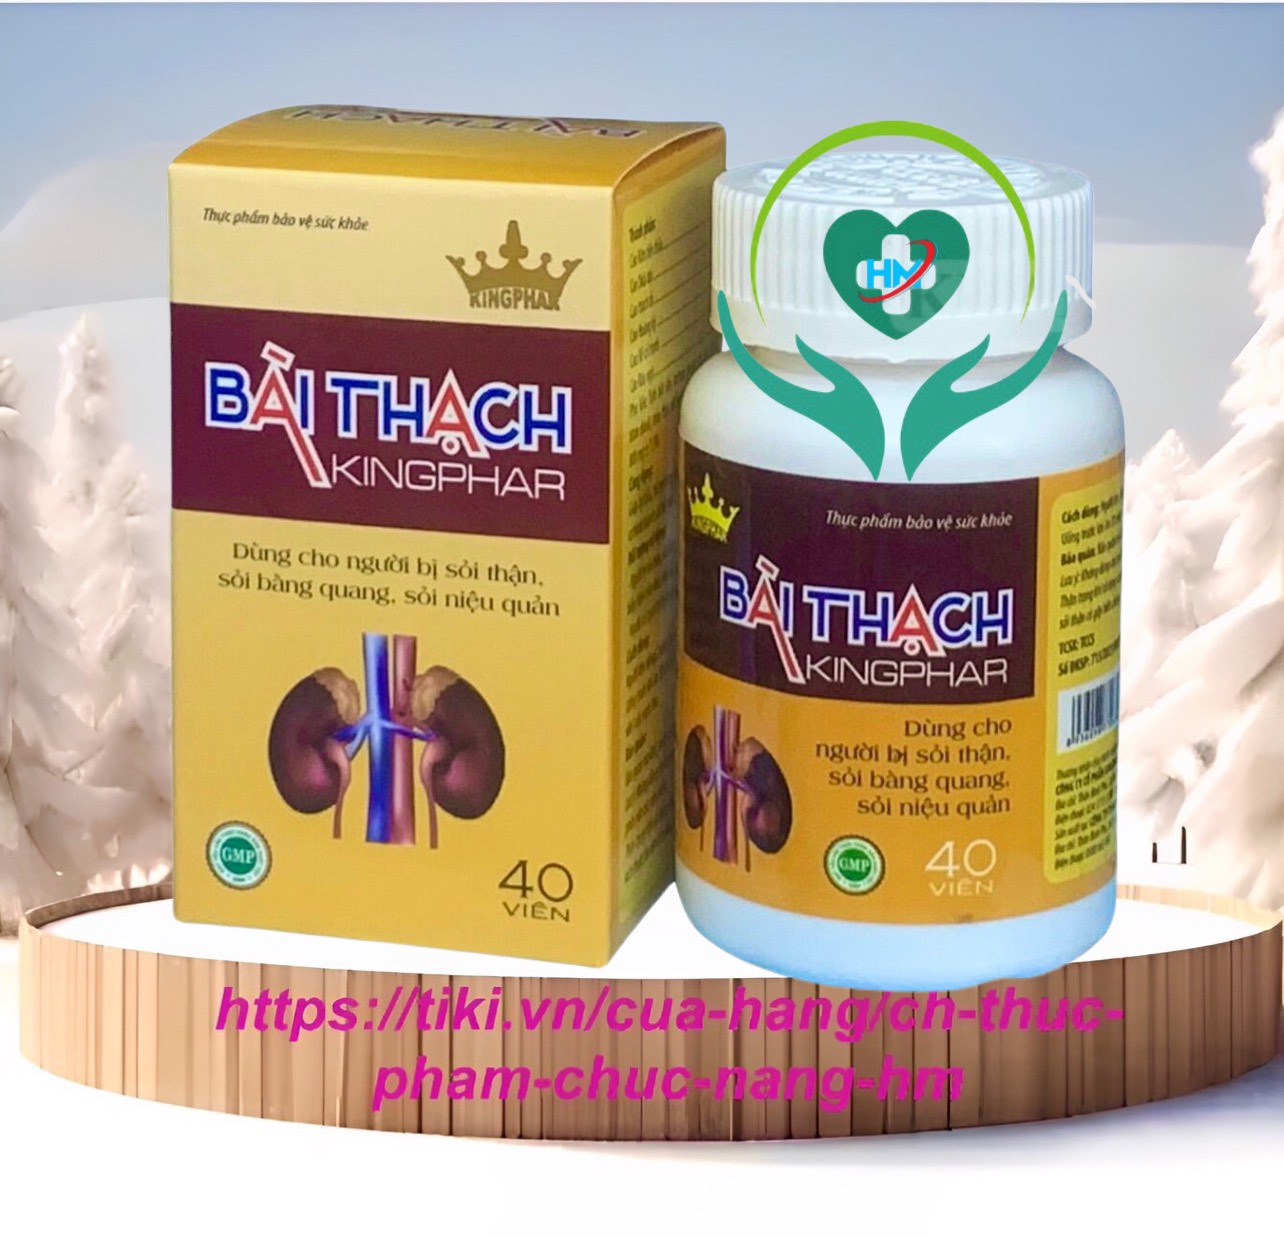 ￼Viên Uống Lợi Tiểu BÀI THẠCH Kingphar 40 Viên - Hỗ trợ giảm nguy cơ viêm đường tiết niêu, sỏi thận, sỏi bàng quang